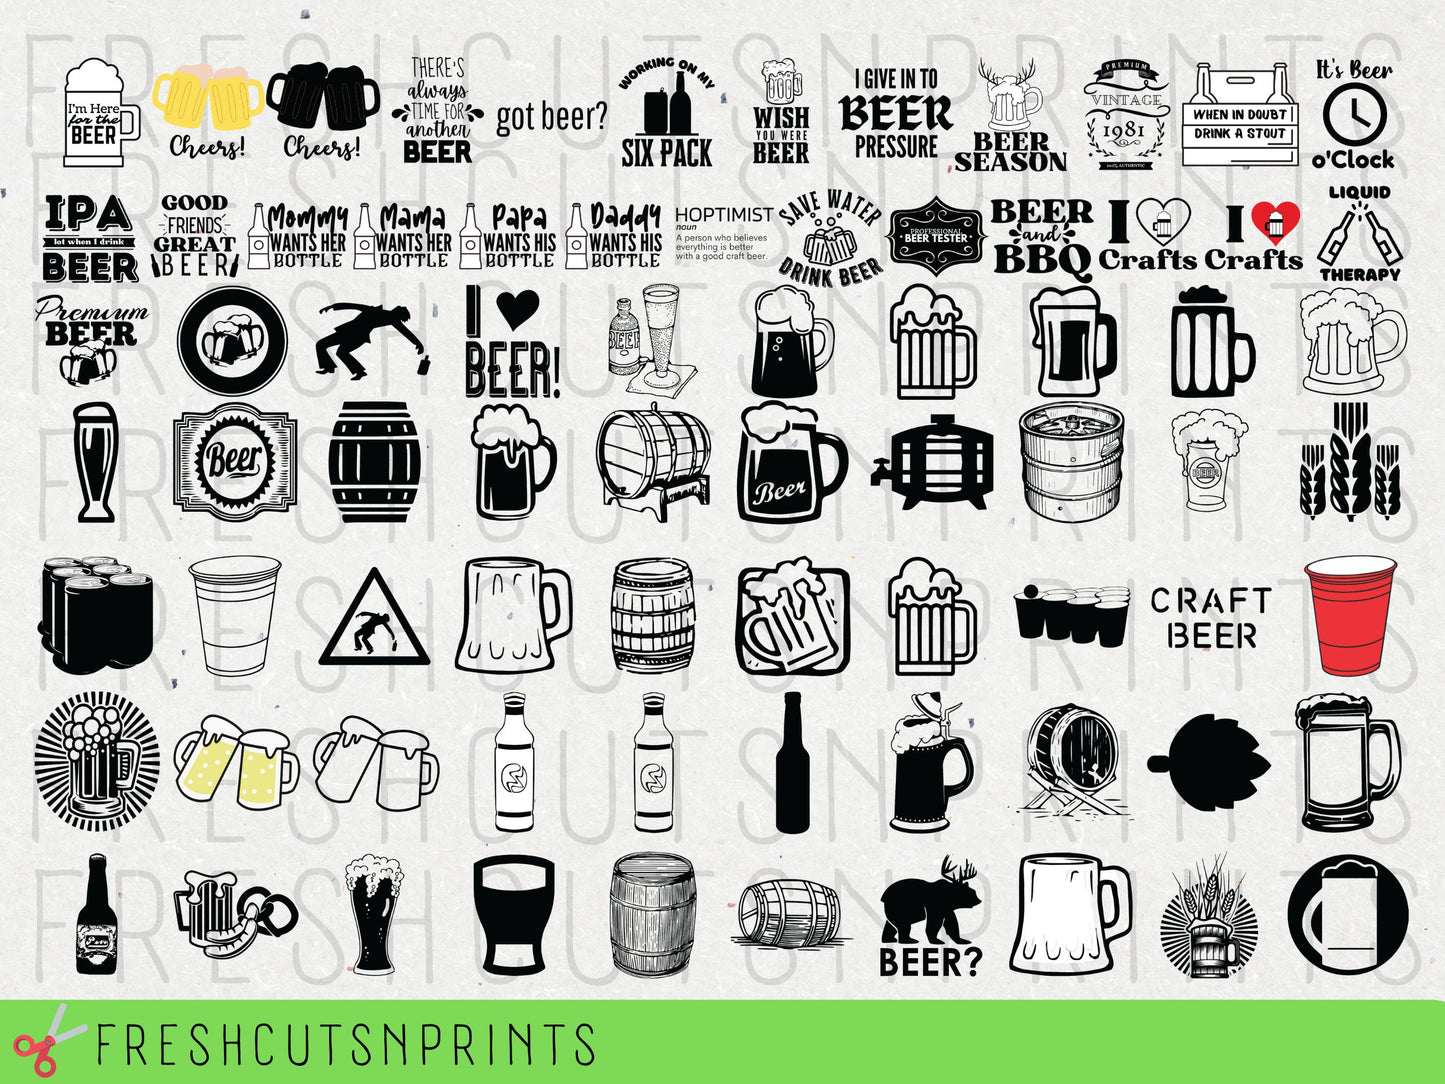 80+ Beer SVG Bundle , Beer quotes, Beer clipart, Beer cut files, Beer Vector, Beer Silhouette, Beer Mug svg, Beer stein svg, Commercial Use